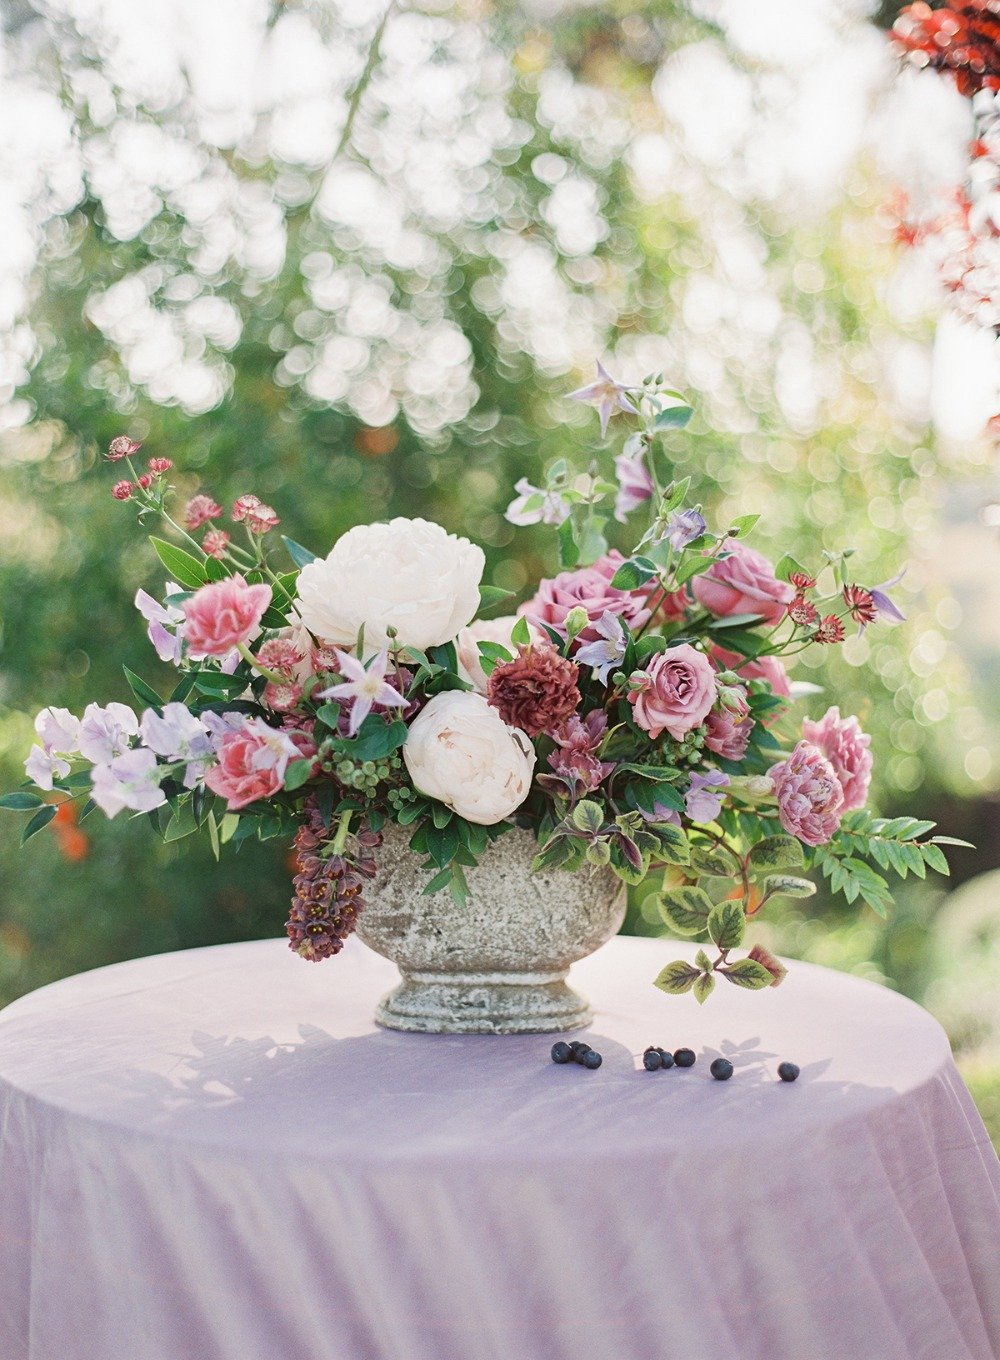 garden inspired wedding centerpiece